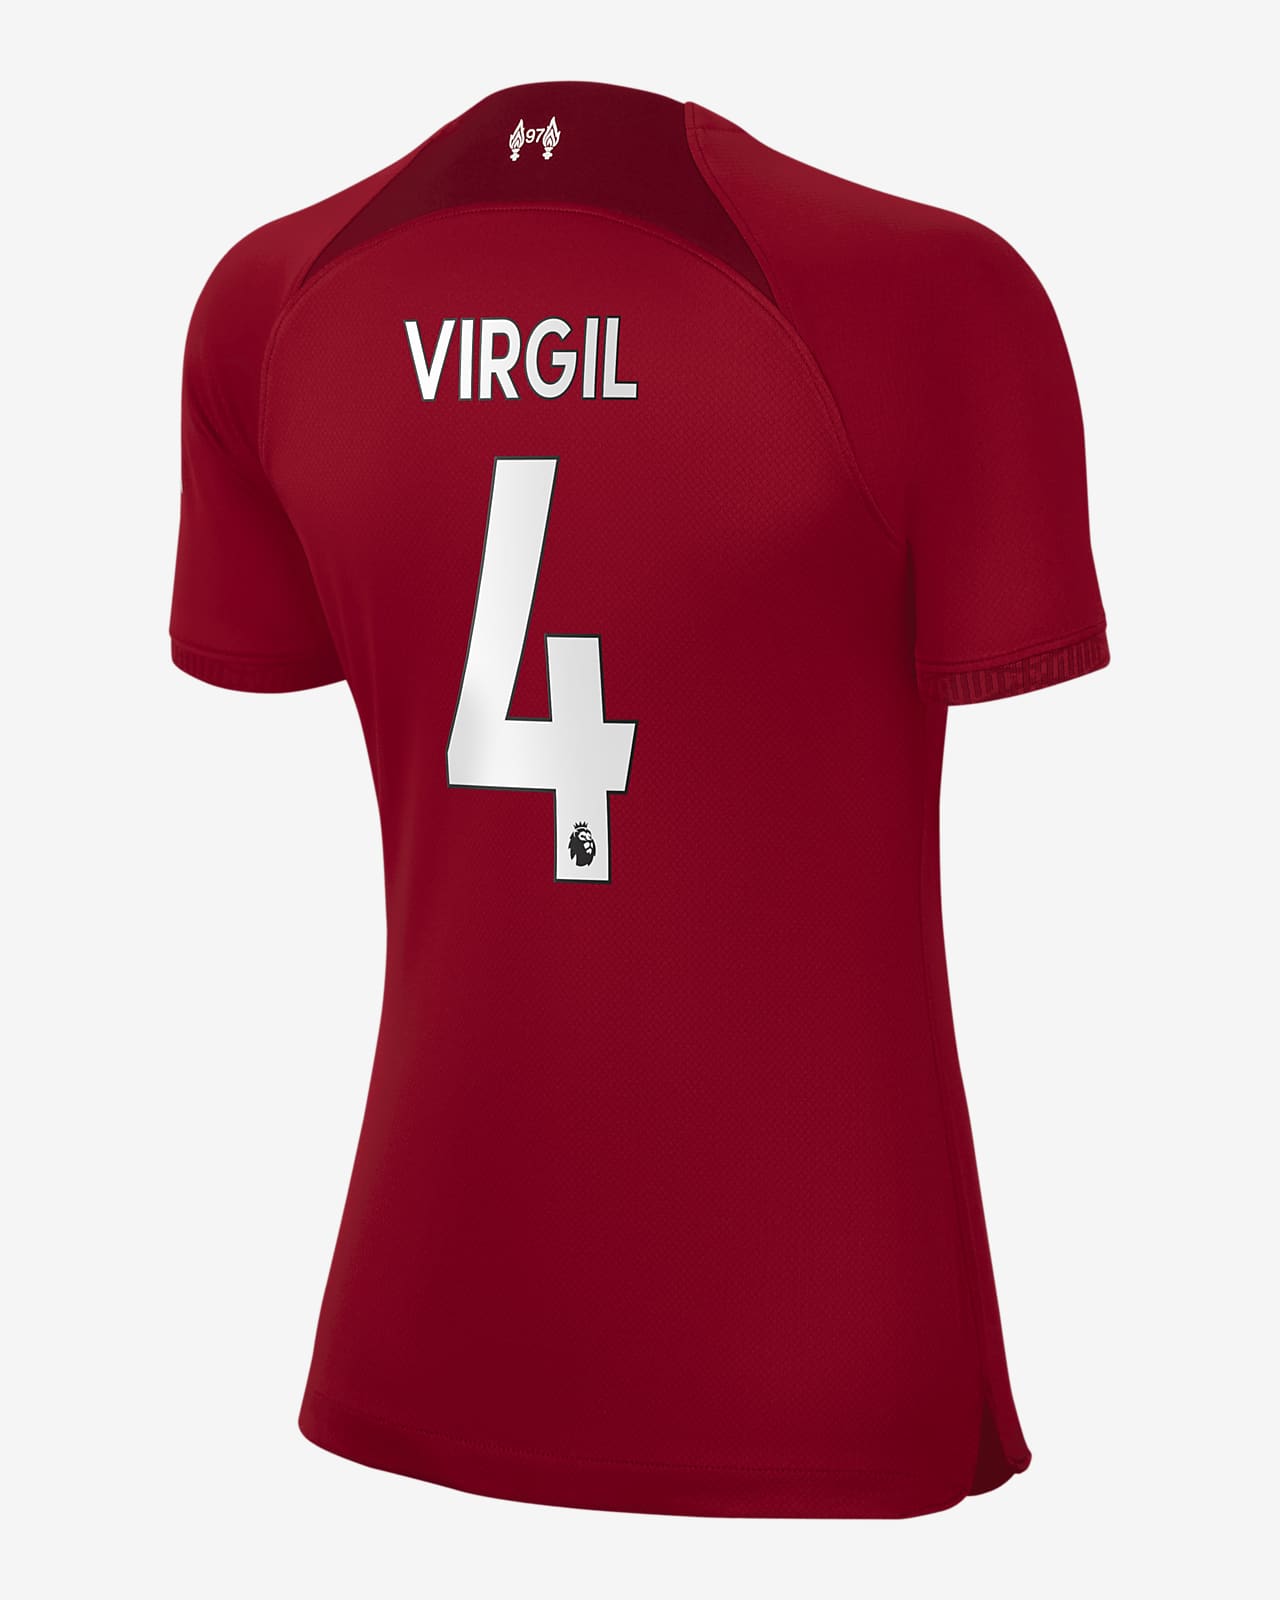 Virgil - Wrestler T-Shirts - Virgil T-shirt